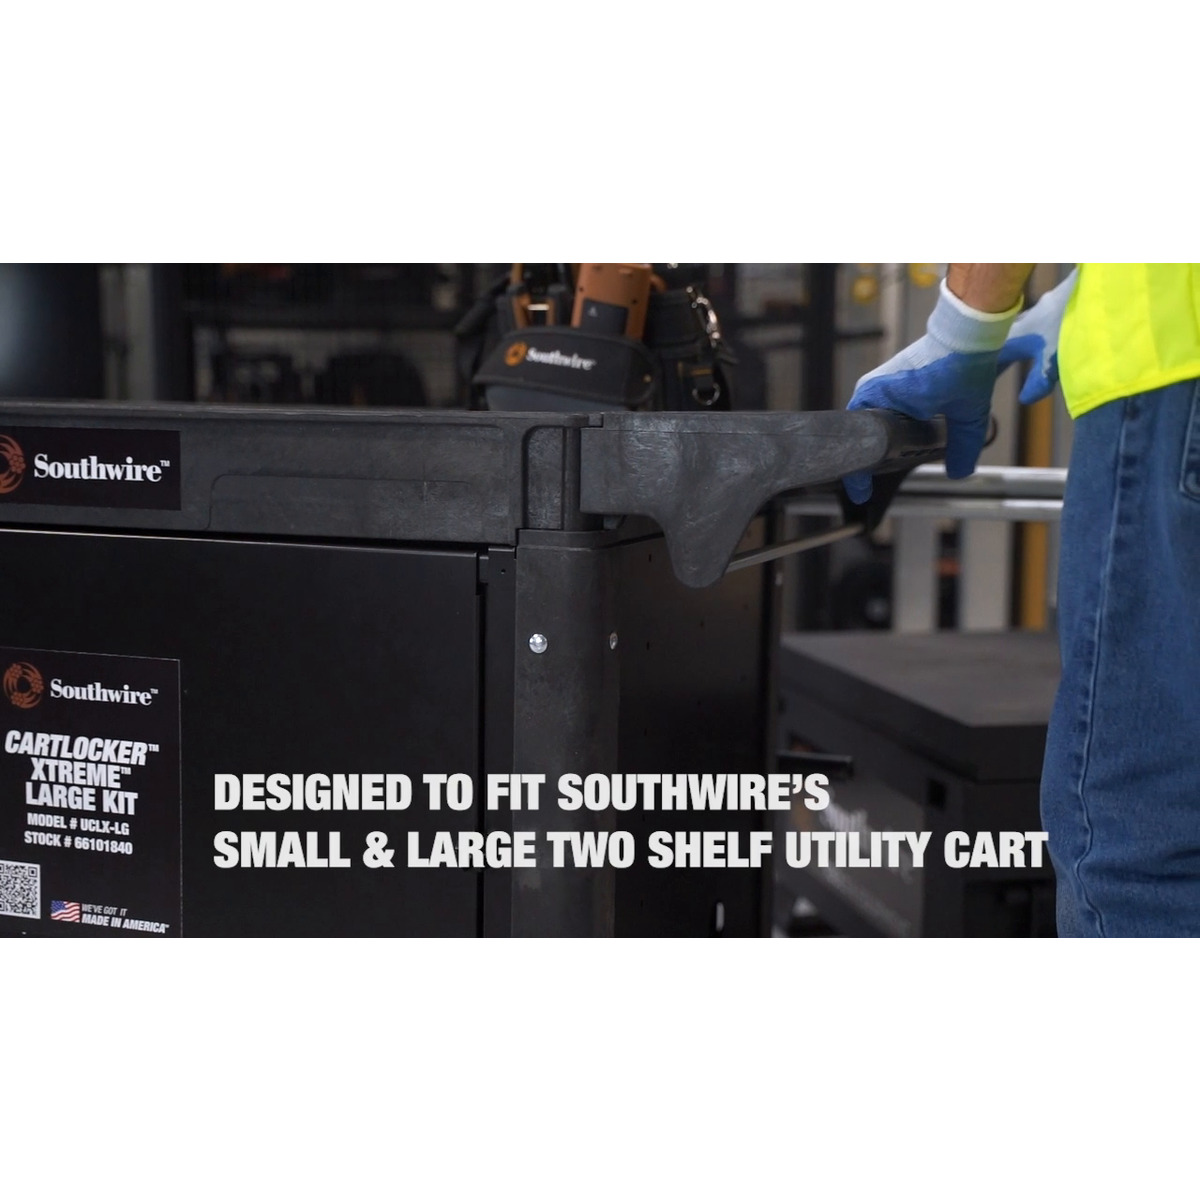 Large Utility Cart with CartLocker™ Xtreme™ Large Kit